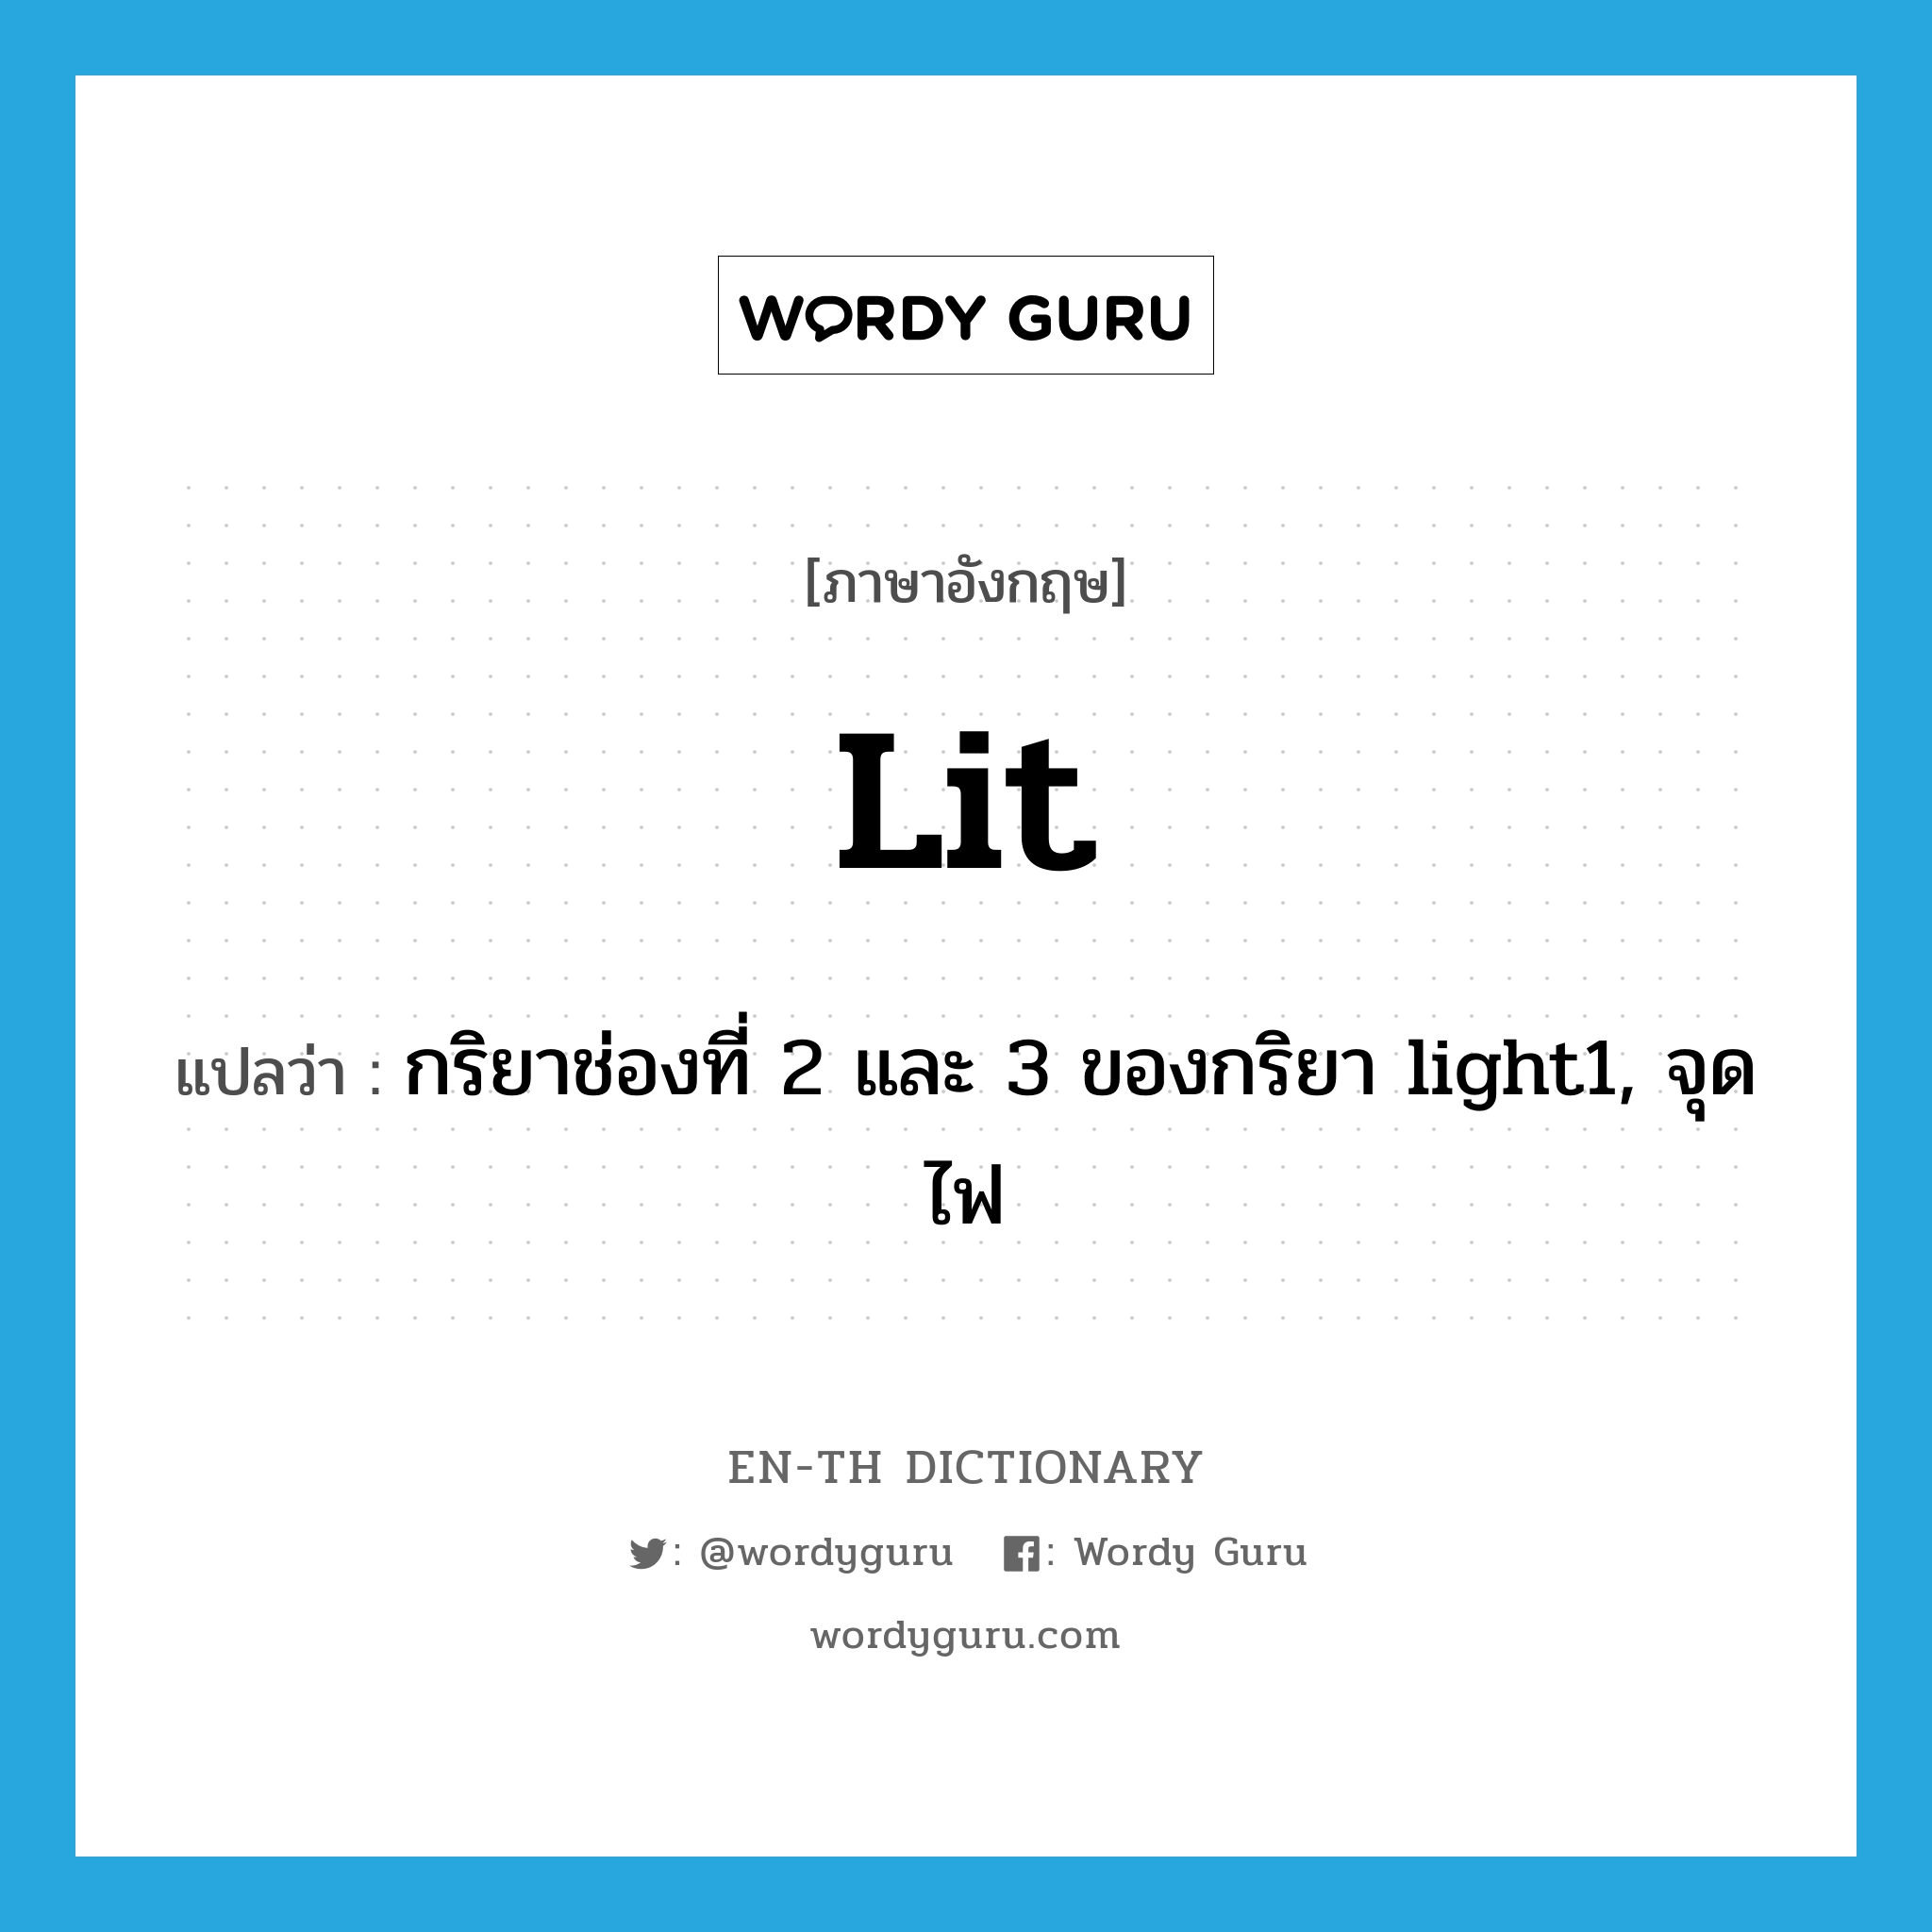 กริยาช่องที่ 2 และ 3 ของกริยา light1, จุดไฟ ภาษาอังกฤษ?, คำศัพท์ภาษาอังกฤษ กริยาช่องที่ 2 และ 3 ของกริยา light1, จุดไฟ แปลว่า lit ประเภท VI หมวด VI